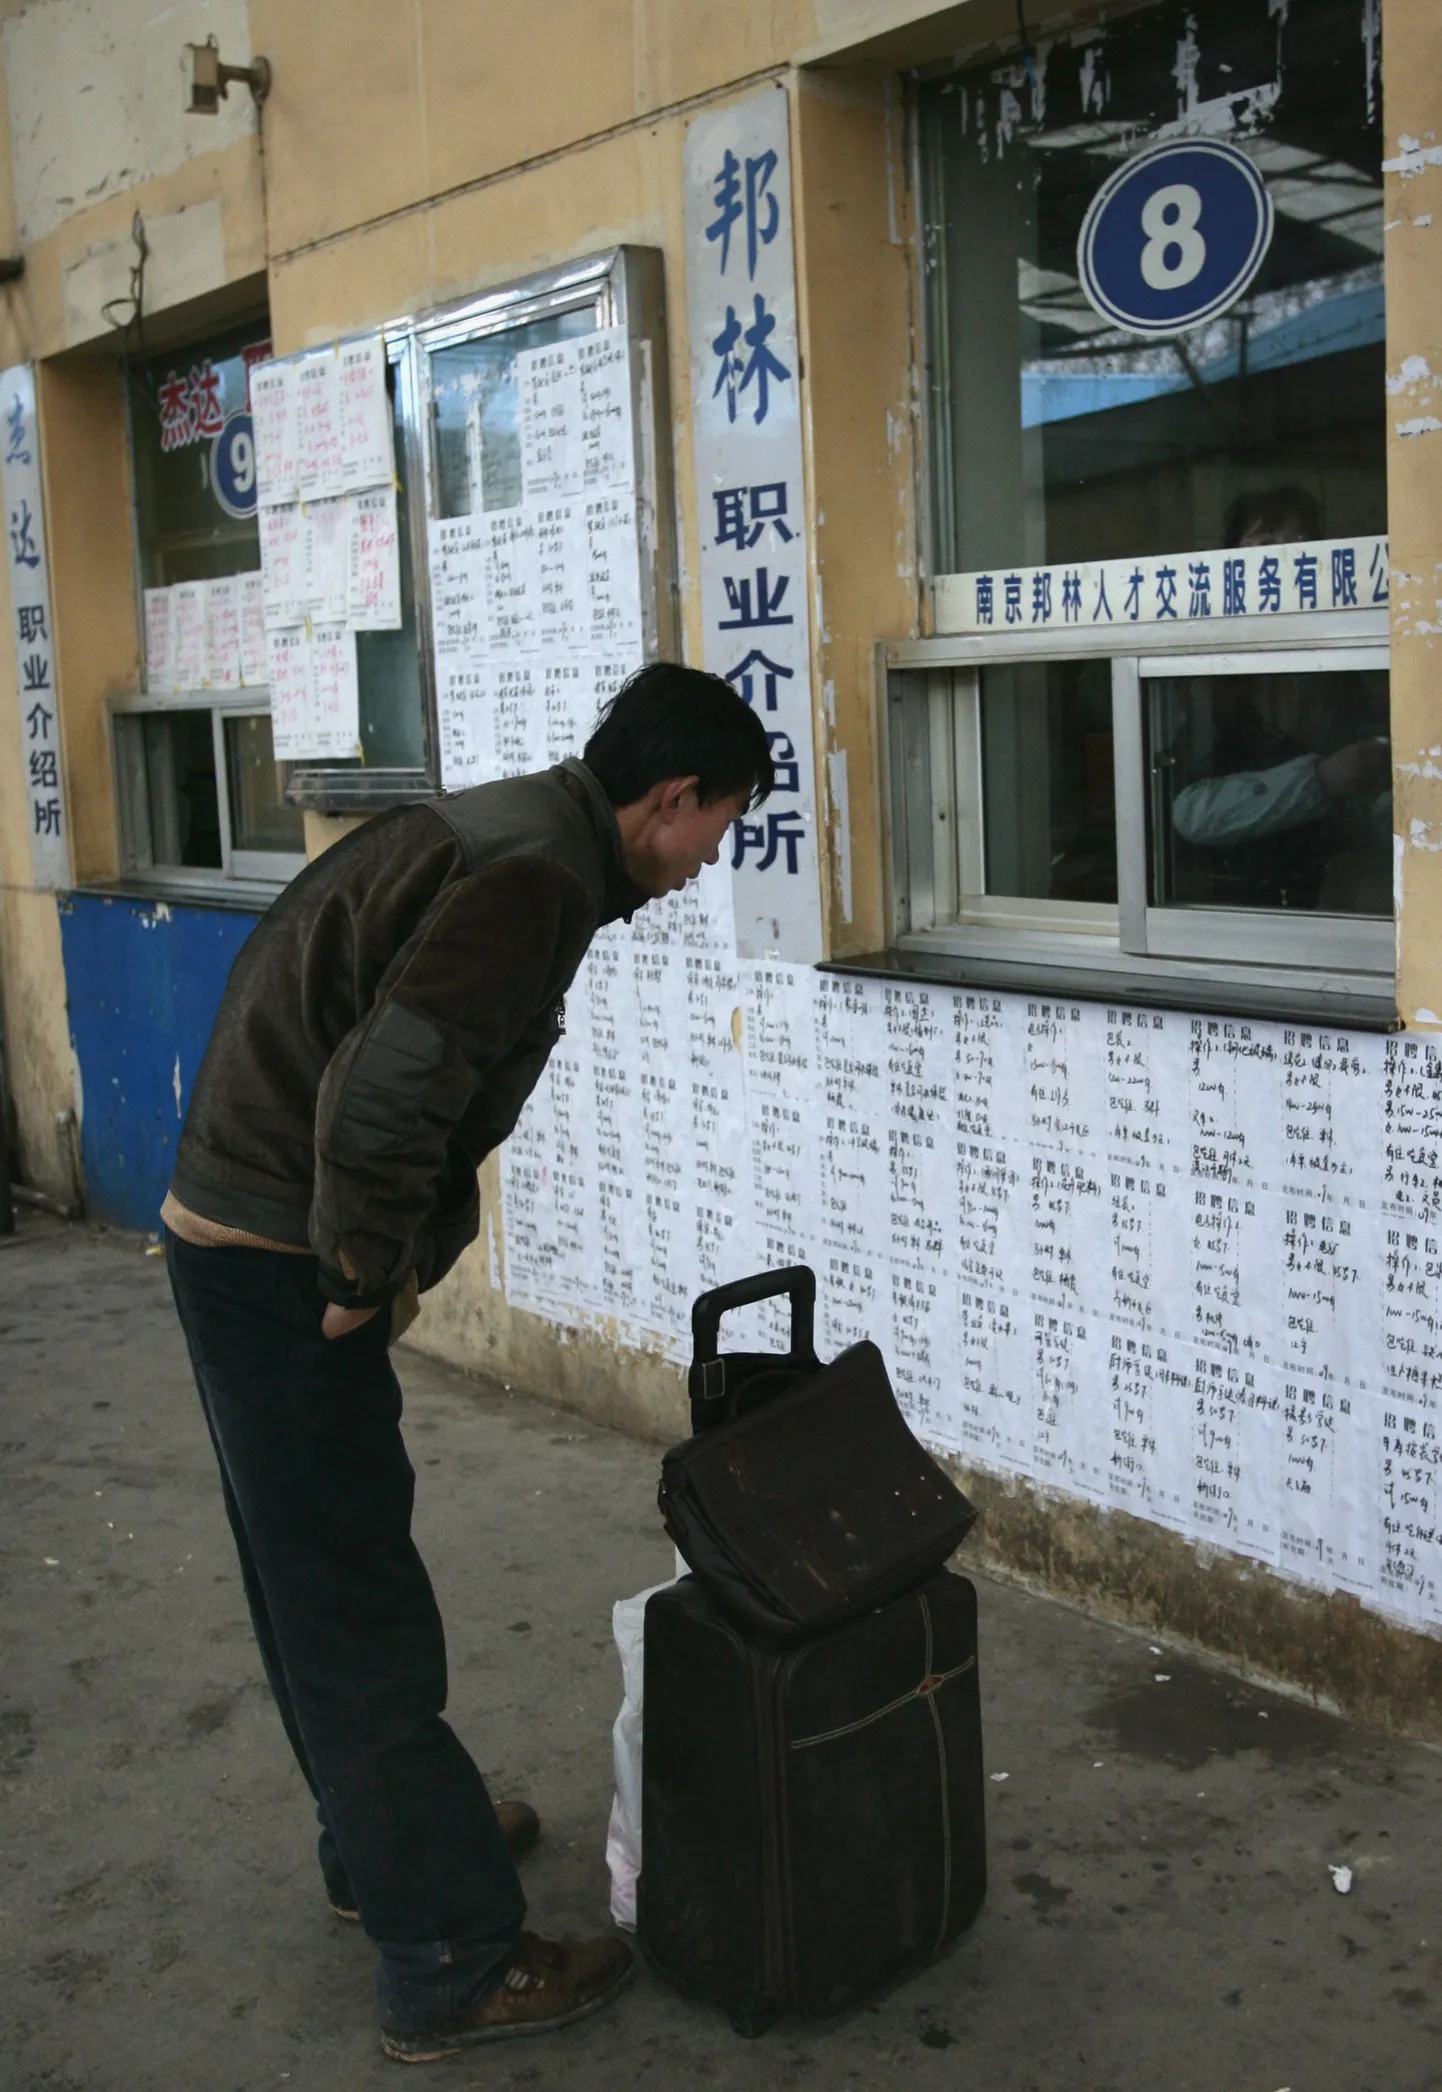 Maalt linna saabunud hiinlane loeb tööpakkumis- ja otsimiskuulutusi.